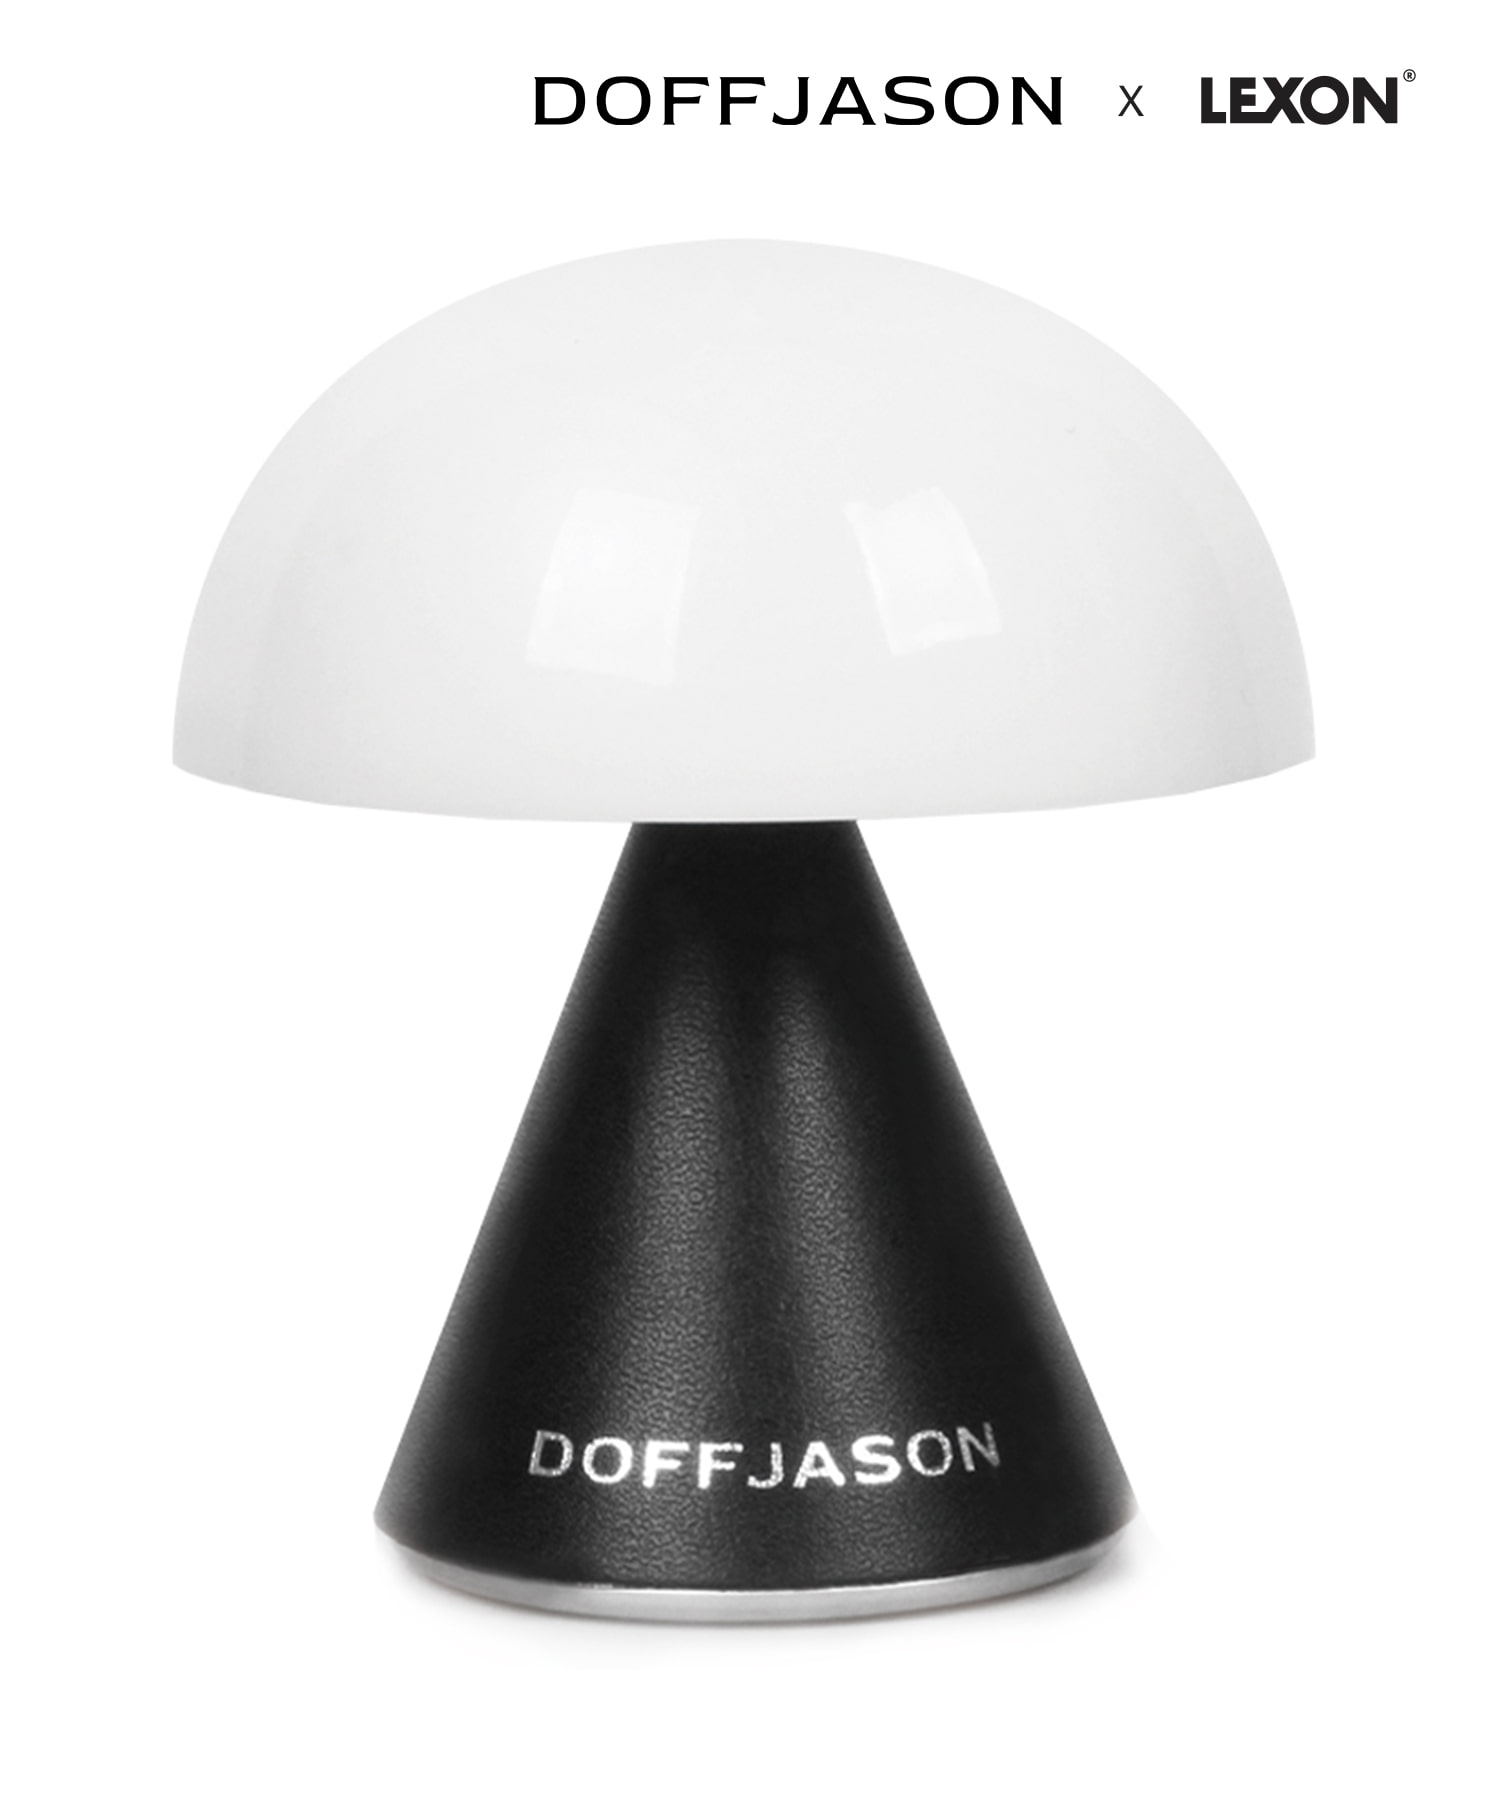 [DOFFJASON X LEXON] MINA MUSHROOM LAMP BLACK S